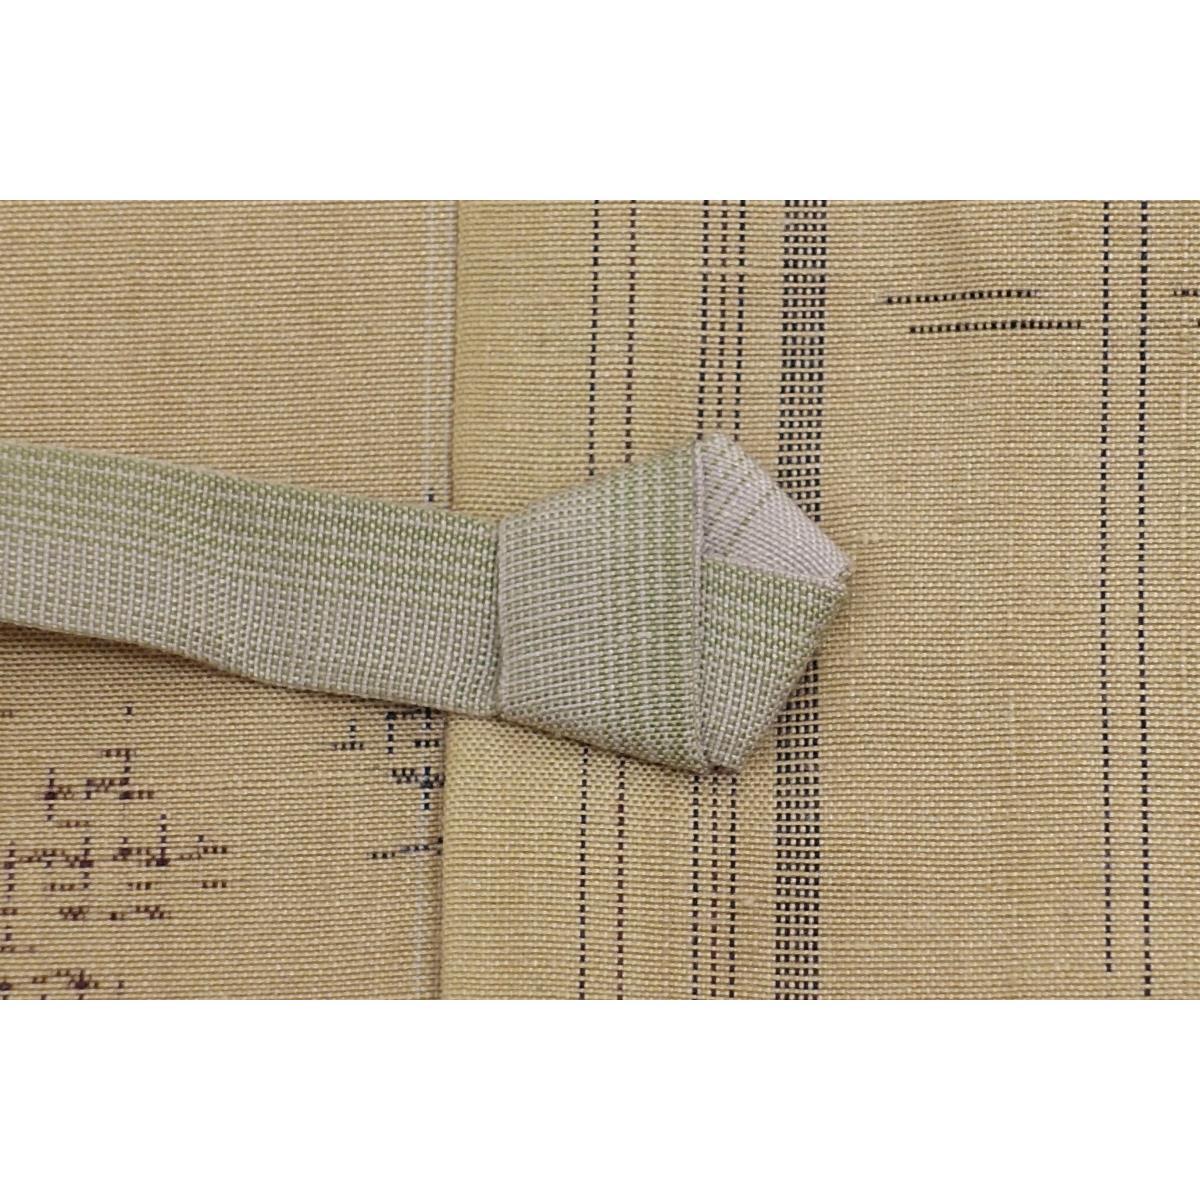 [Unused items] Stylish coat Tsumugi weave